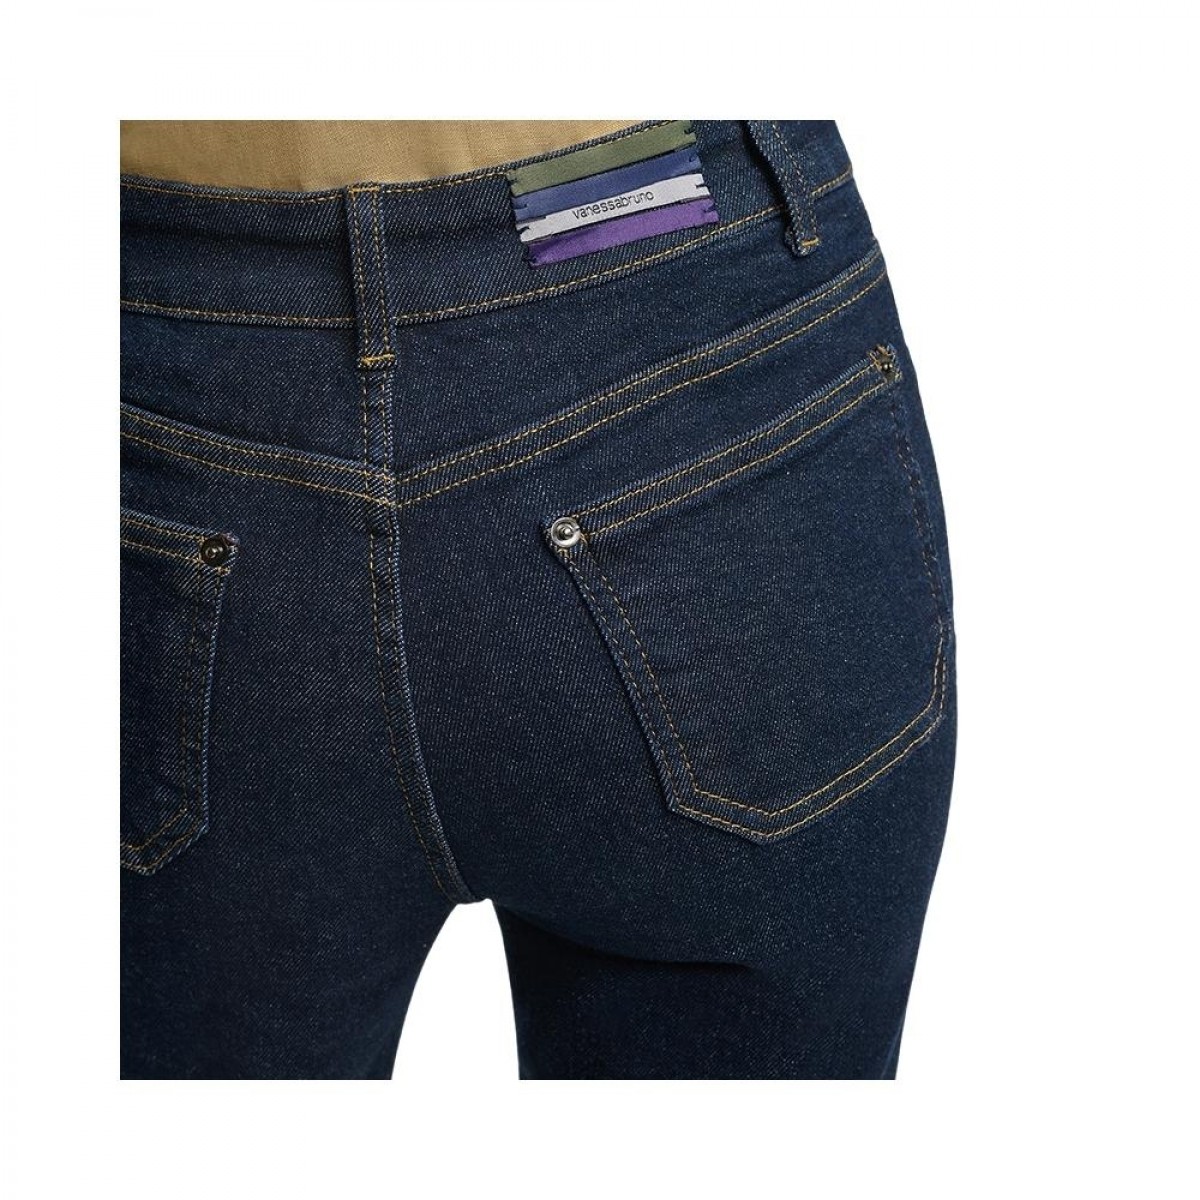 dompay jeans - indigo - baglommer